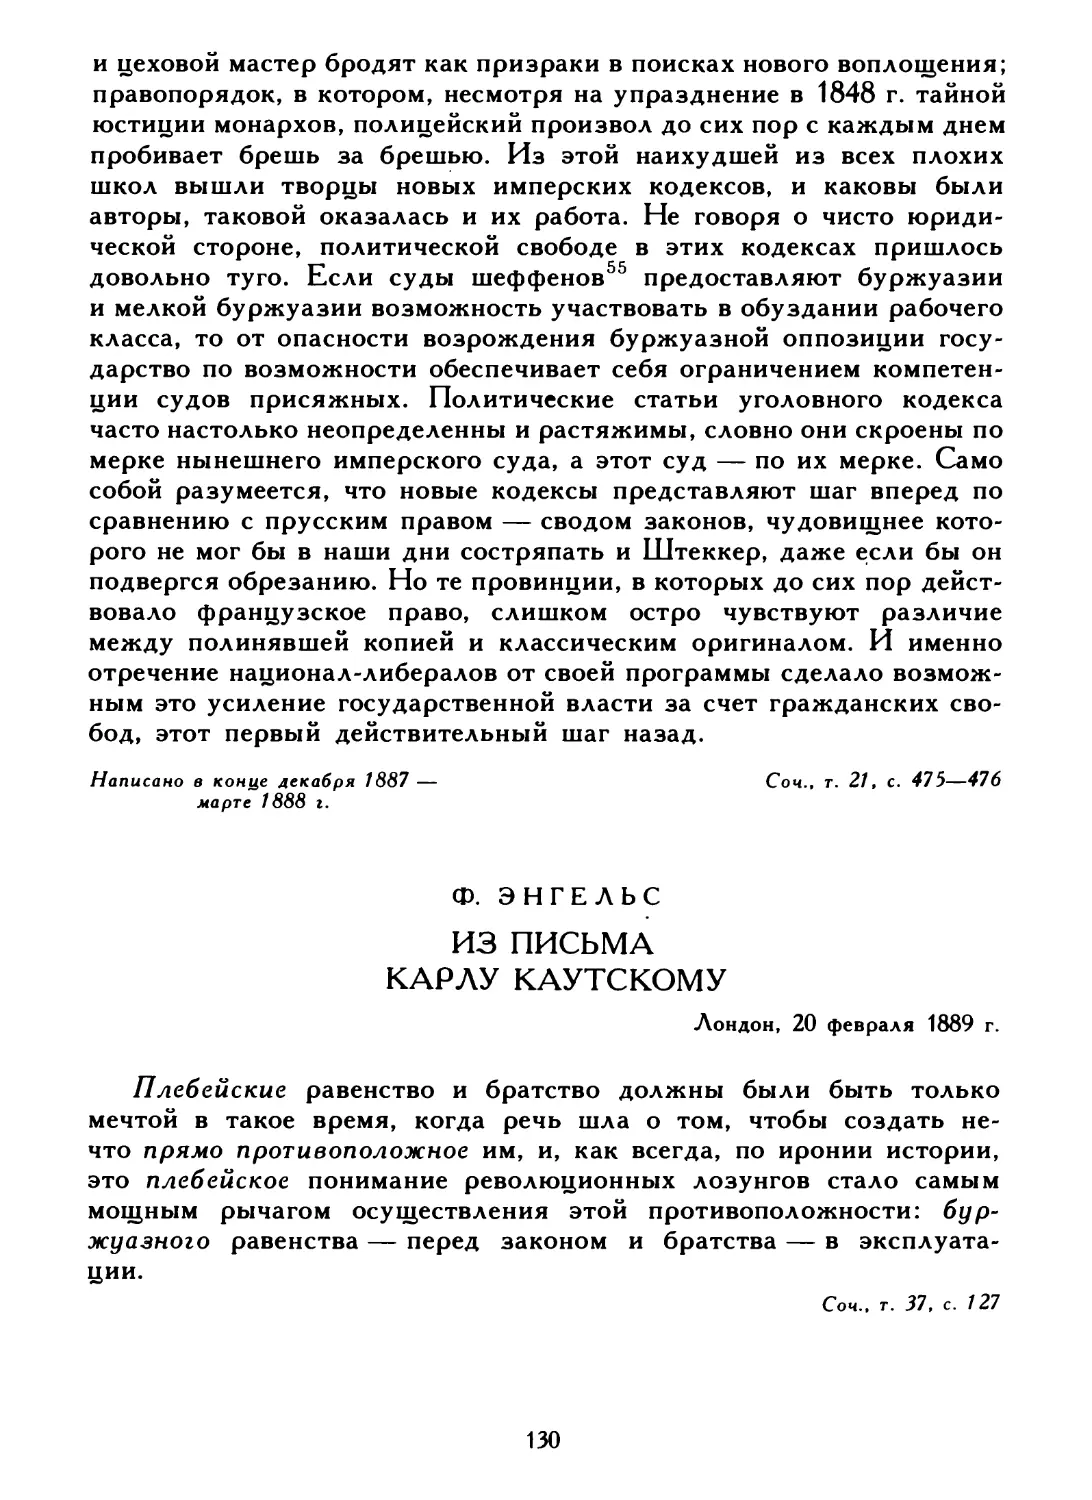 Ф. Энгельс. Из письма Карлу Каутскому, 20 февраля 1889 г.